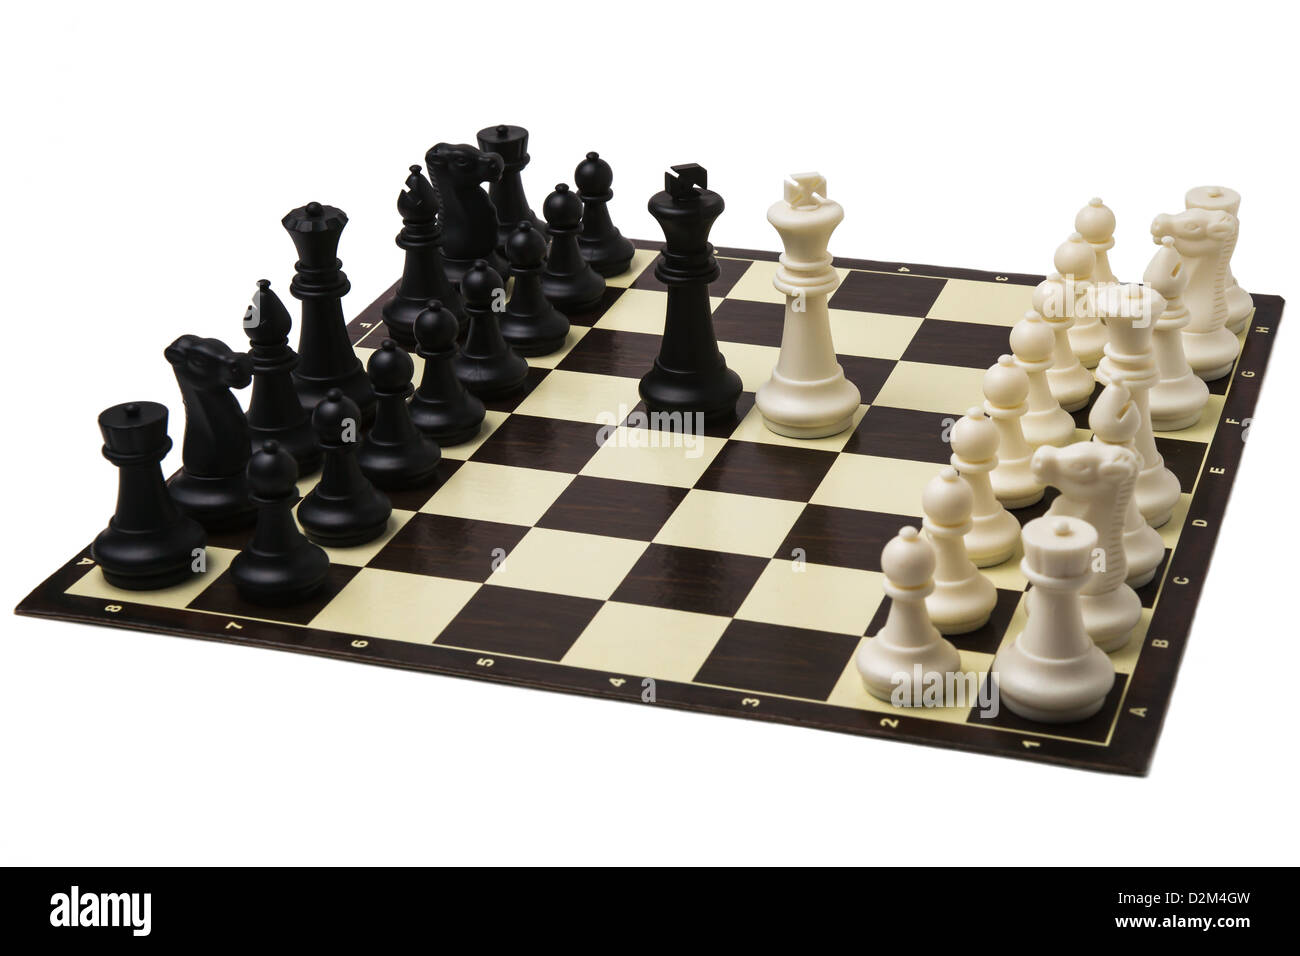 Friedensverhandlungen auf Gipfelebene. Ein fertiges spielen Sätze von Schach und schwarzen und weißen Könige in der Mitte ein Schachbrett. Stockfoto